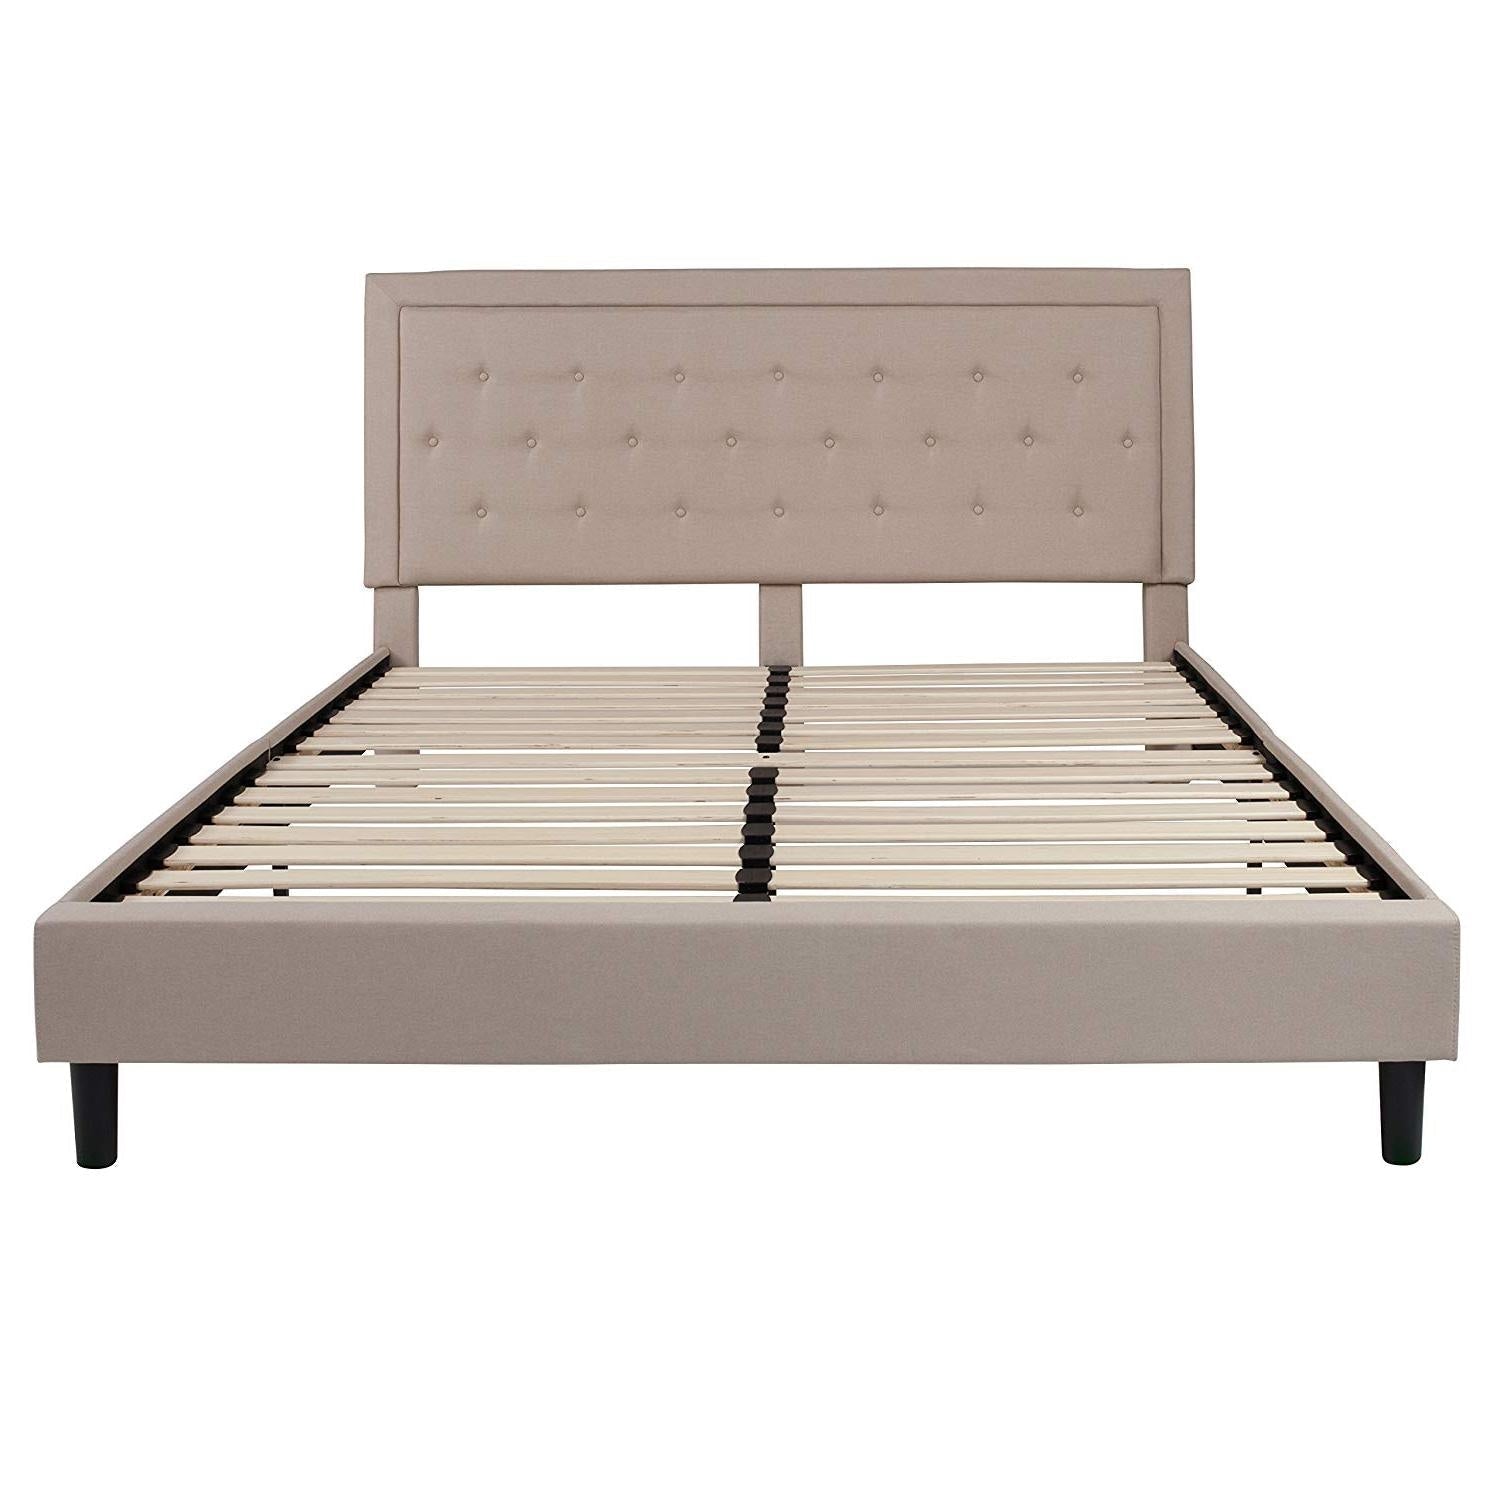 Bedroom > Bed Frames > Platform Beds - King Beige Upholstered Platform Bed Frame With Button Tufted Headboard